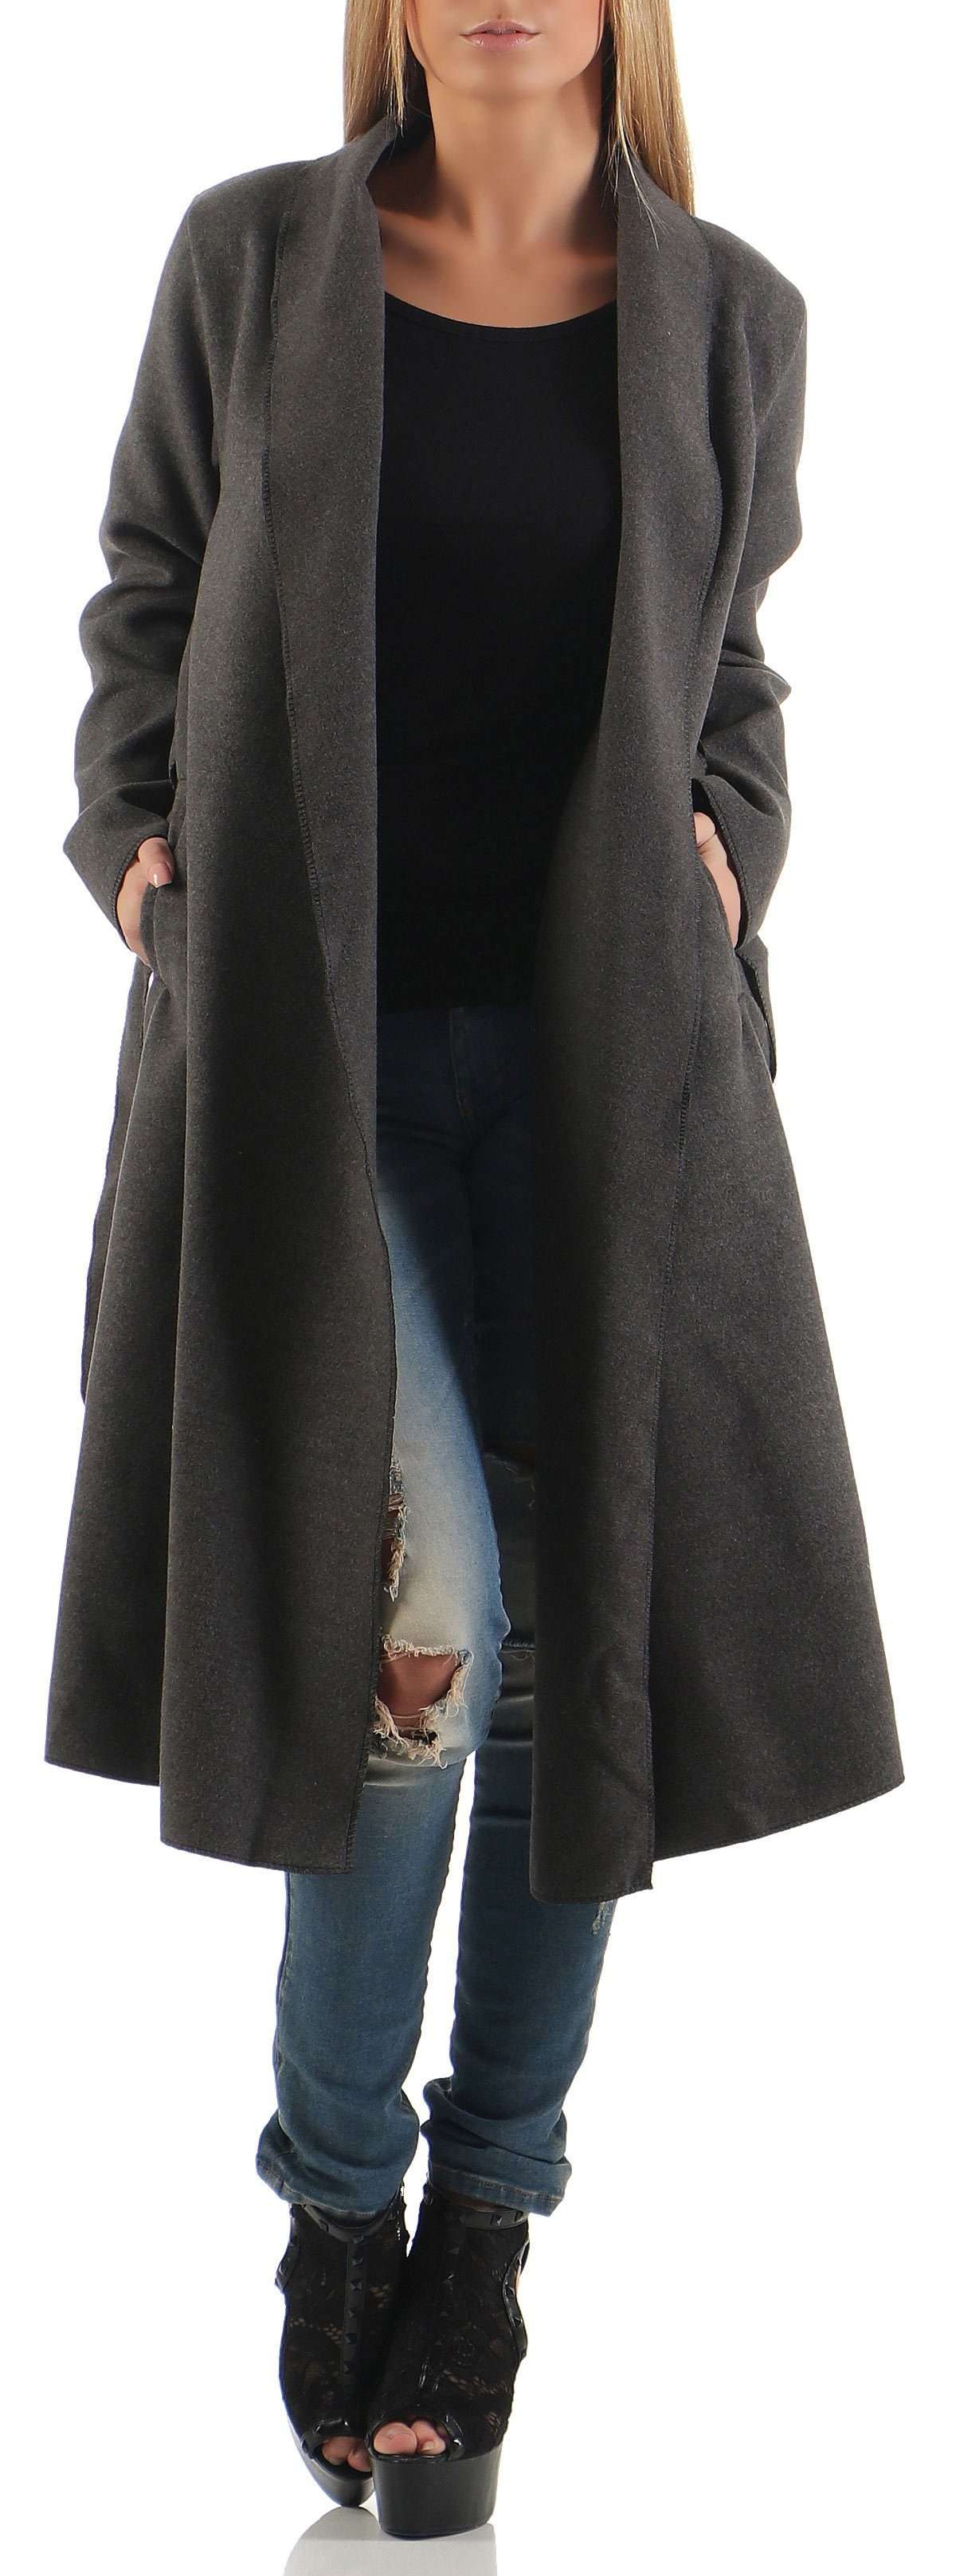 Длинное пальто 3050 Элегантное пальто с поясом.